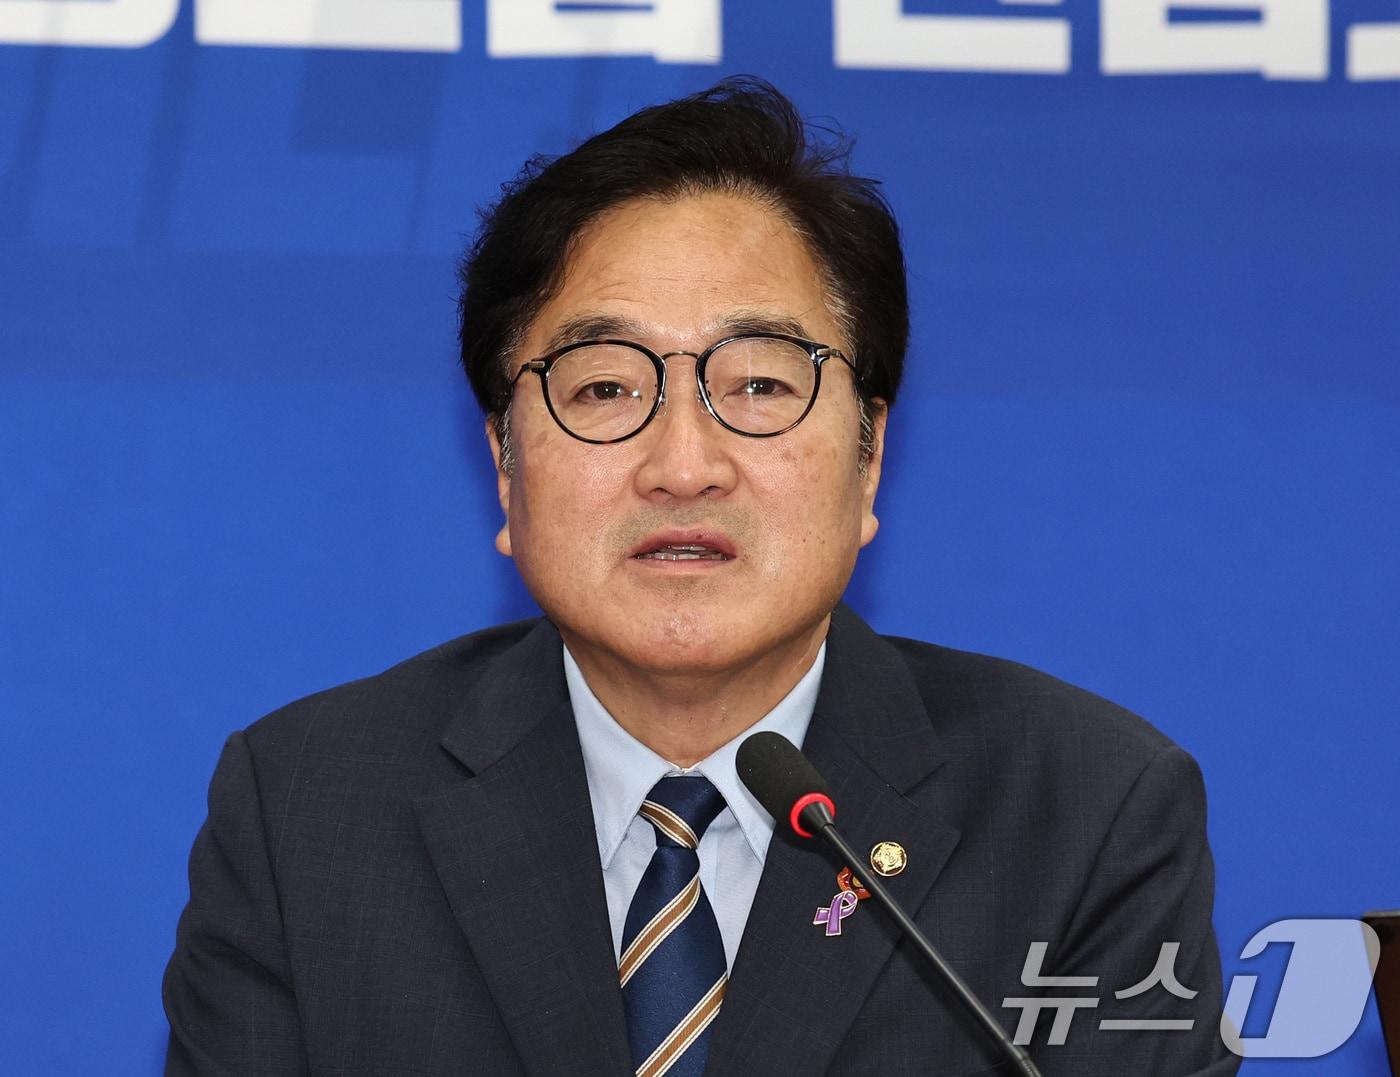 우원식 더불어민주당 국회의장 후보. 뉴스1 ⓒ News1 구윤성 기자